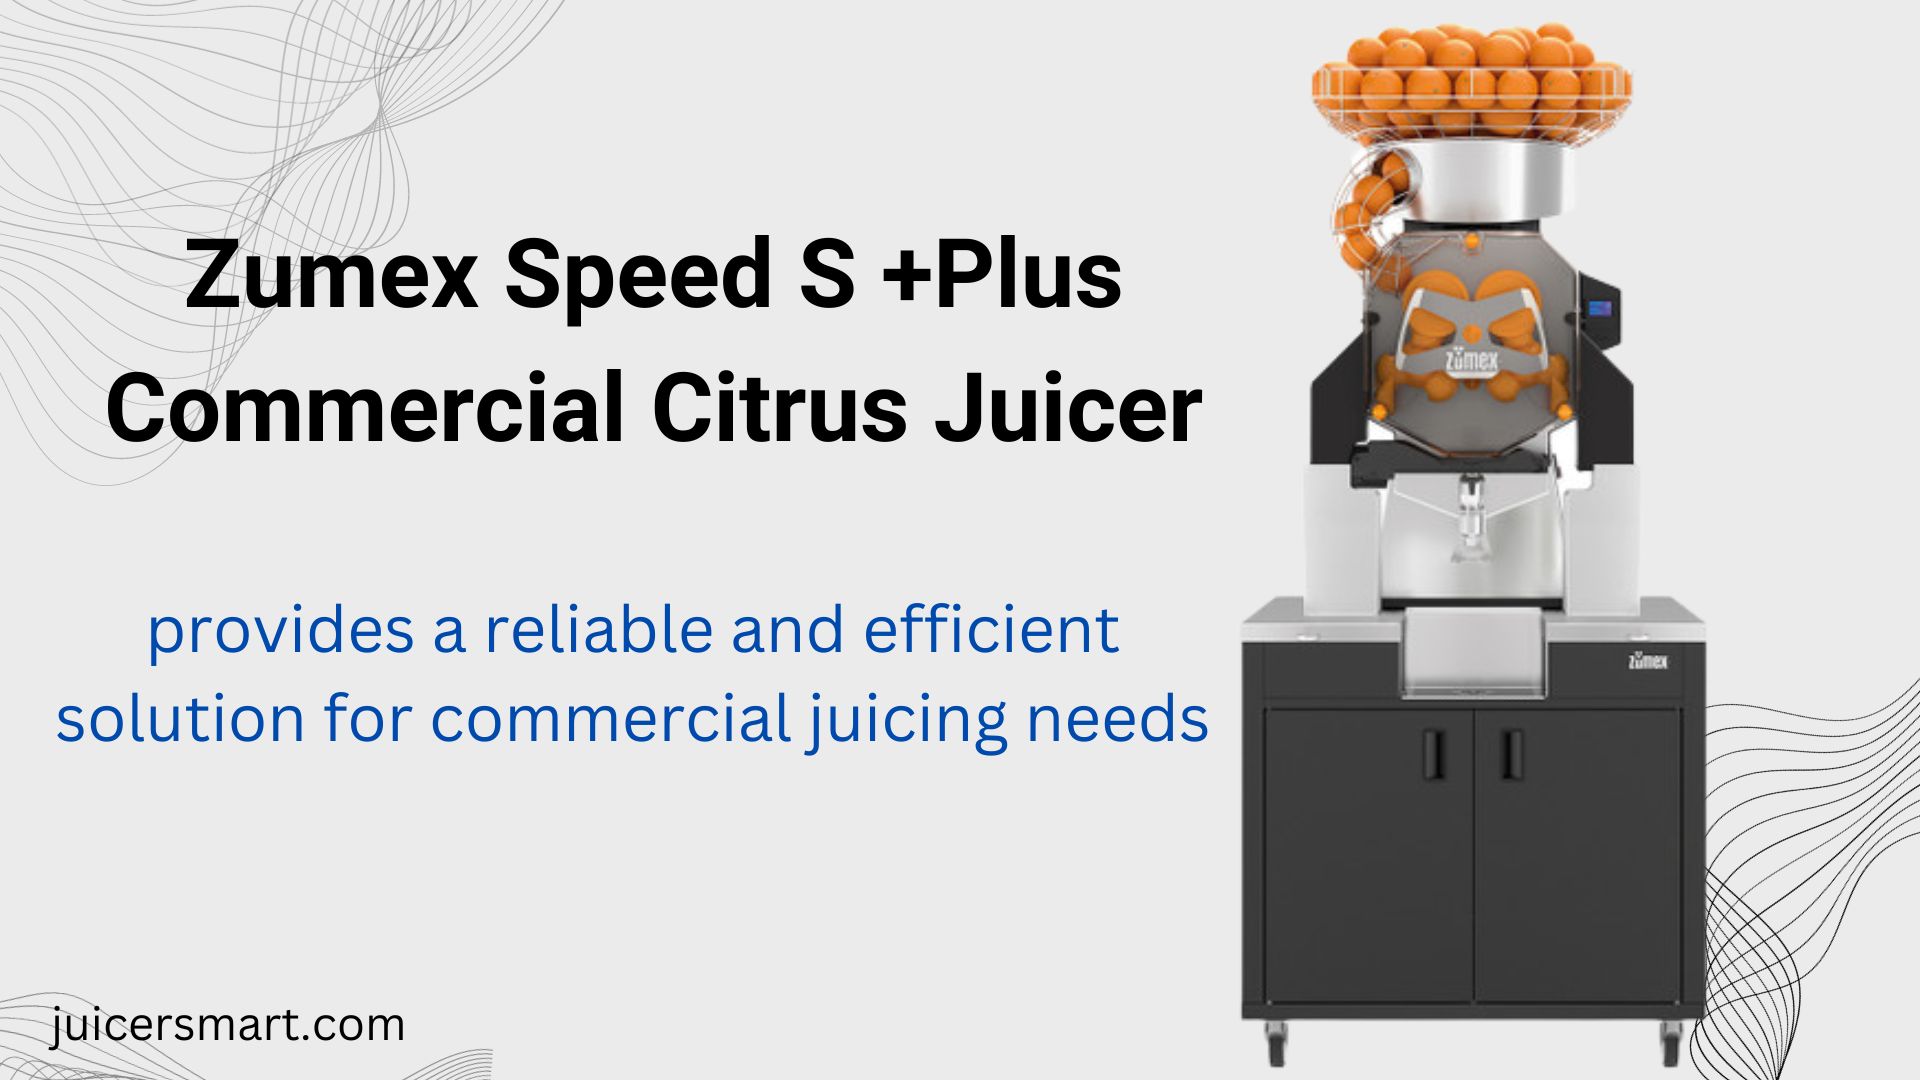 Zumex Speed S +Plus Commercial Citrus Juicer